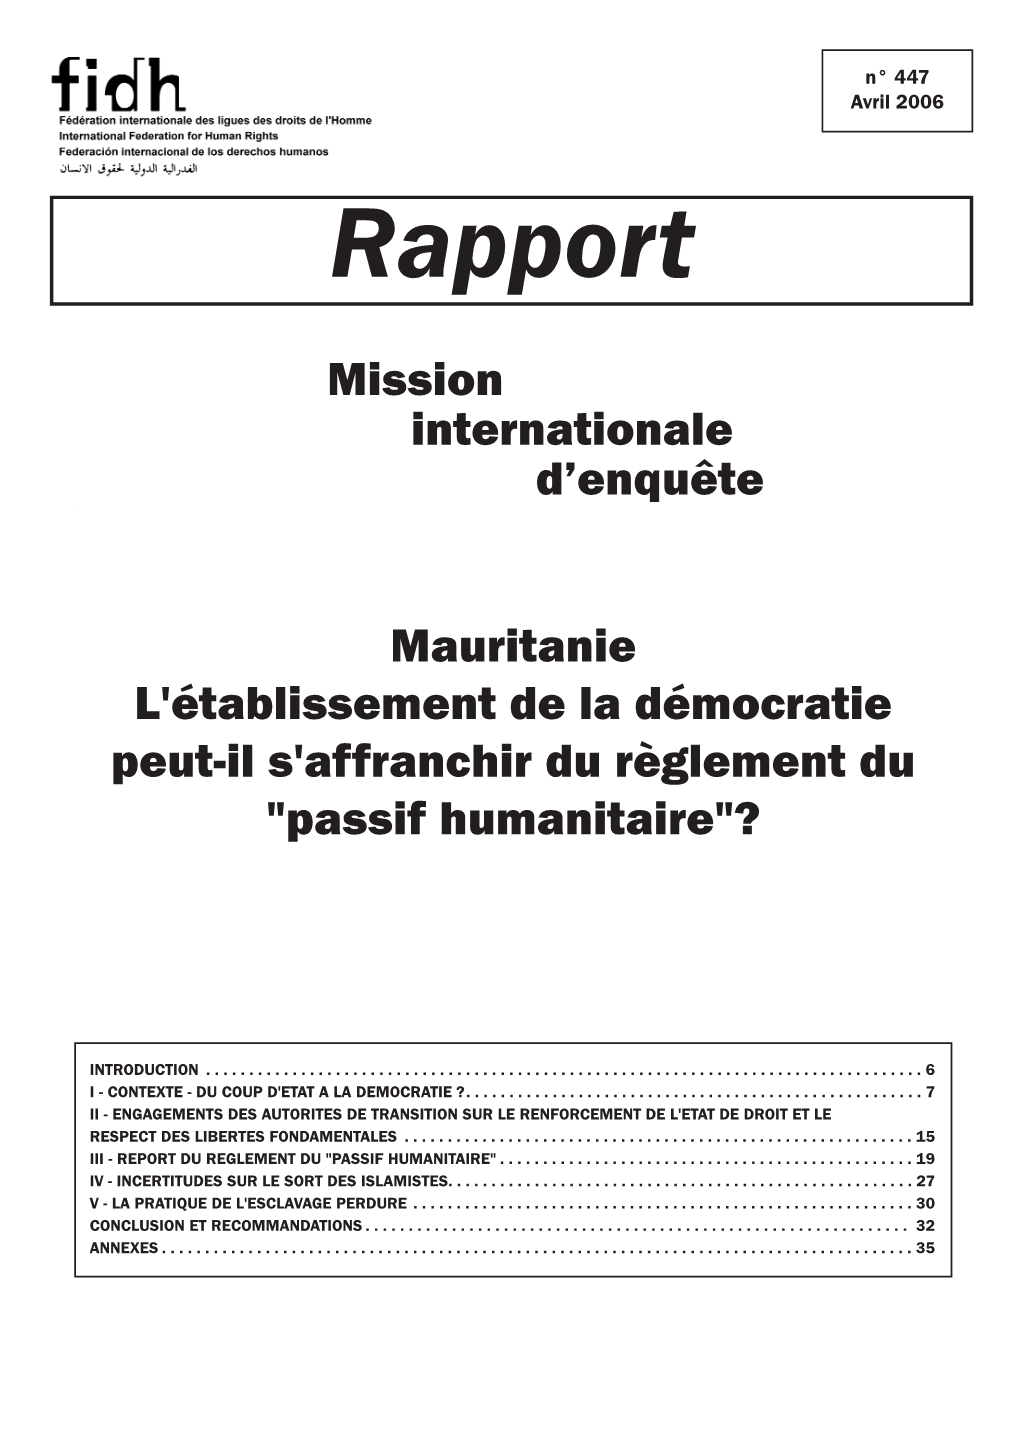 Mauritanie L'établissement De La Démocratie Peut-Il S'affranchir Du Règlement Du "Passif Humanitaire"?